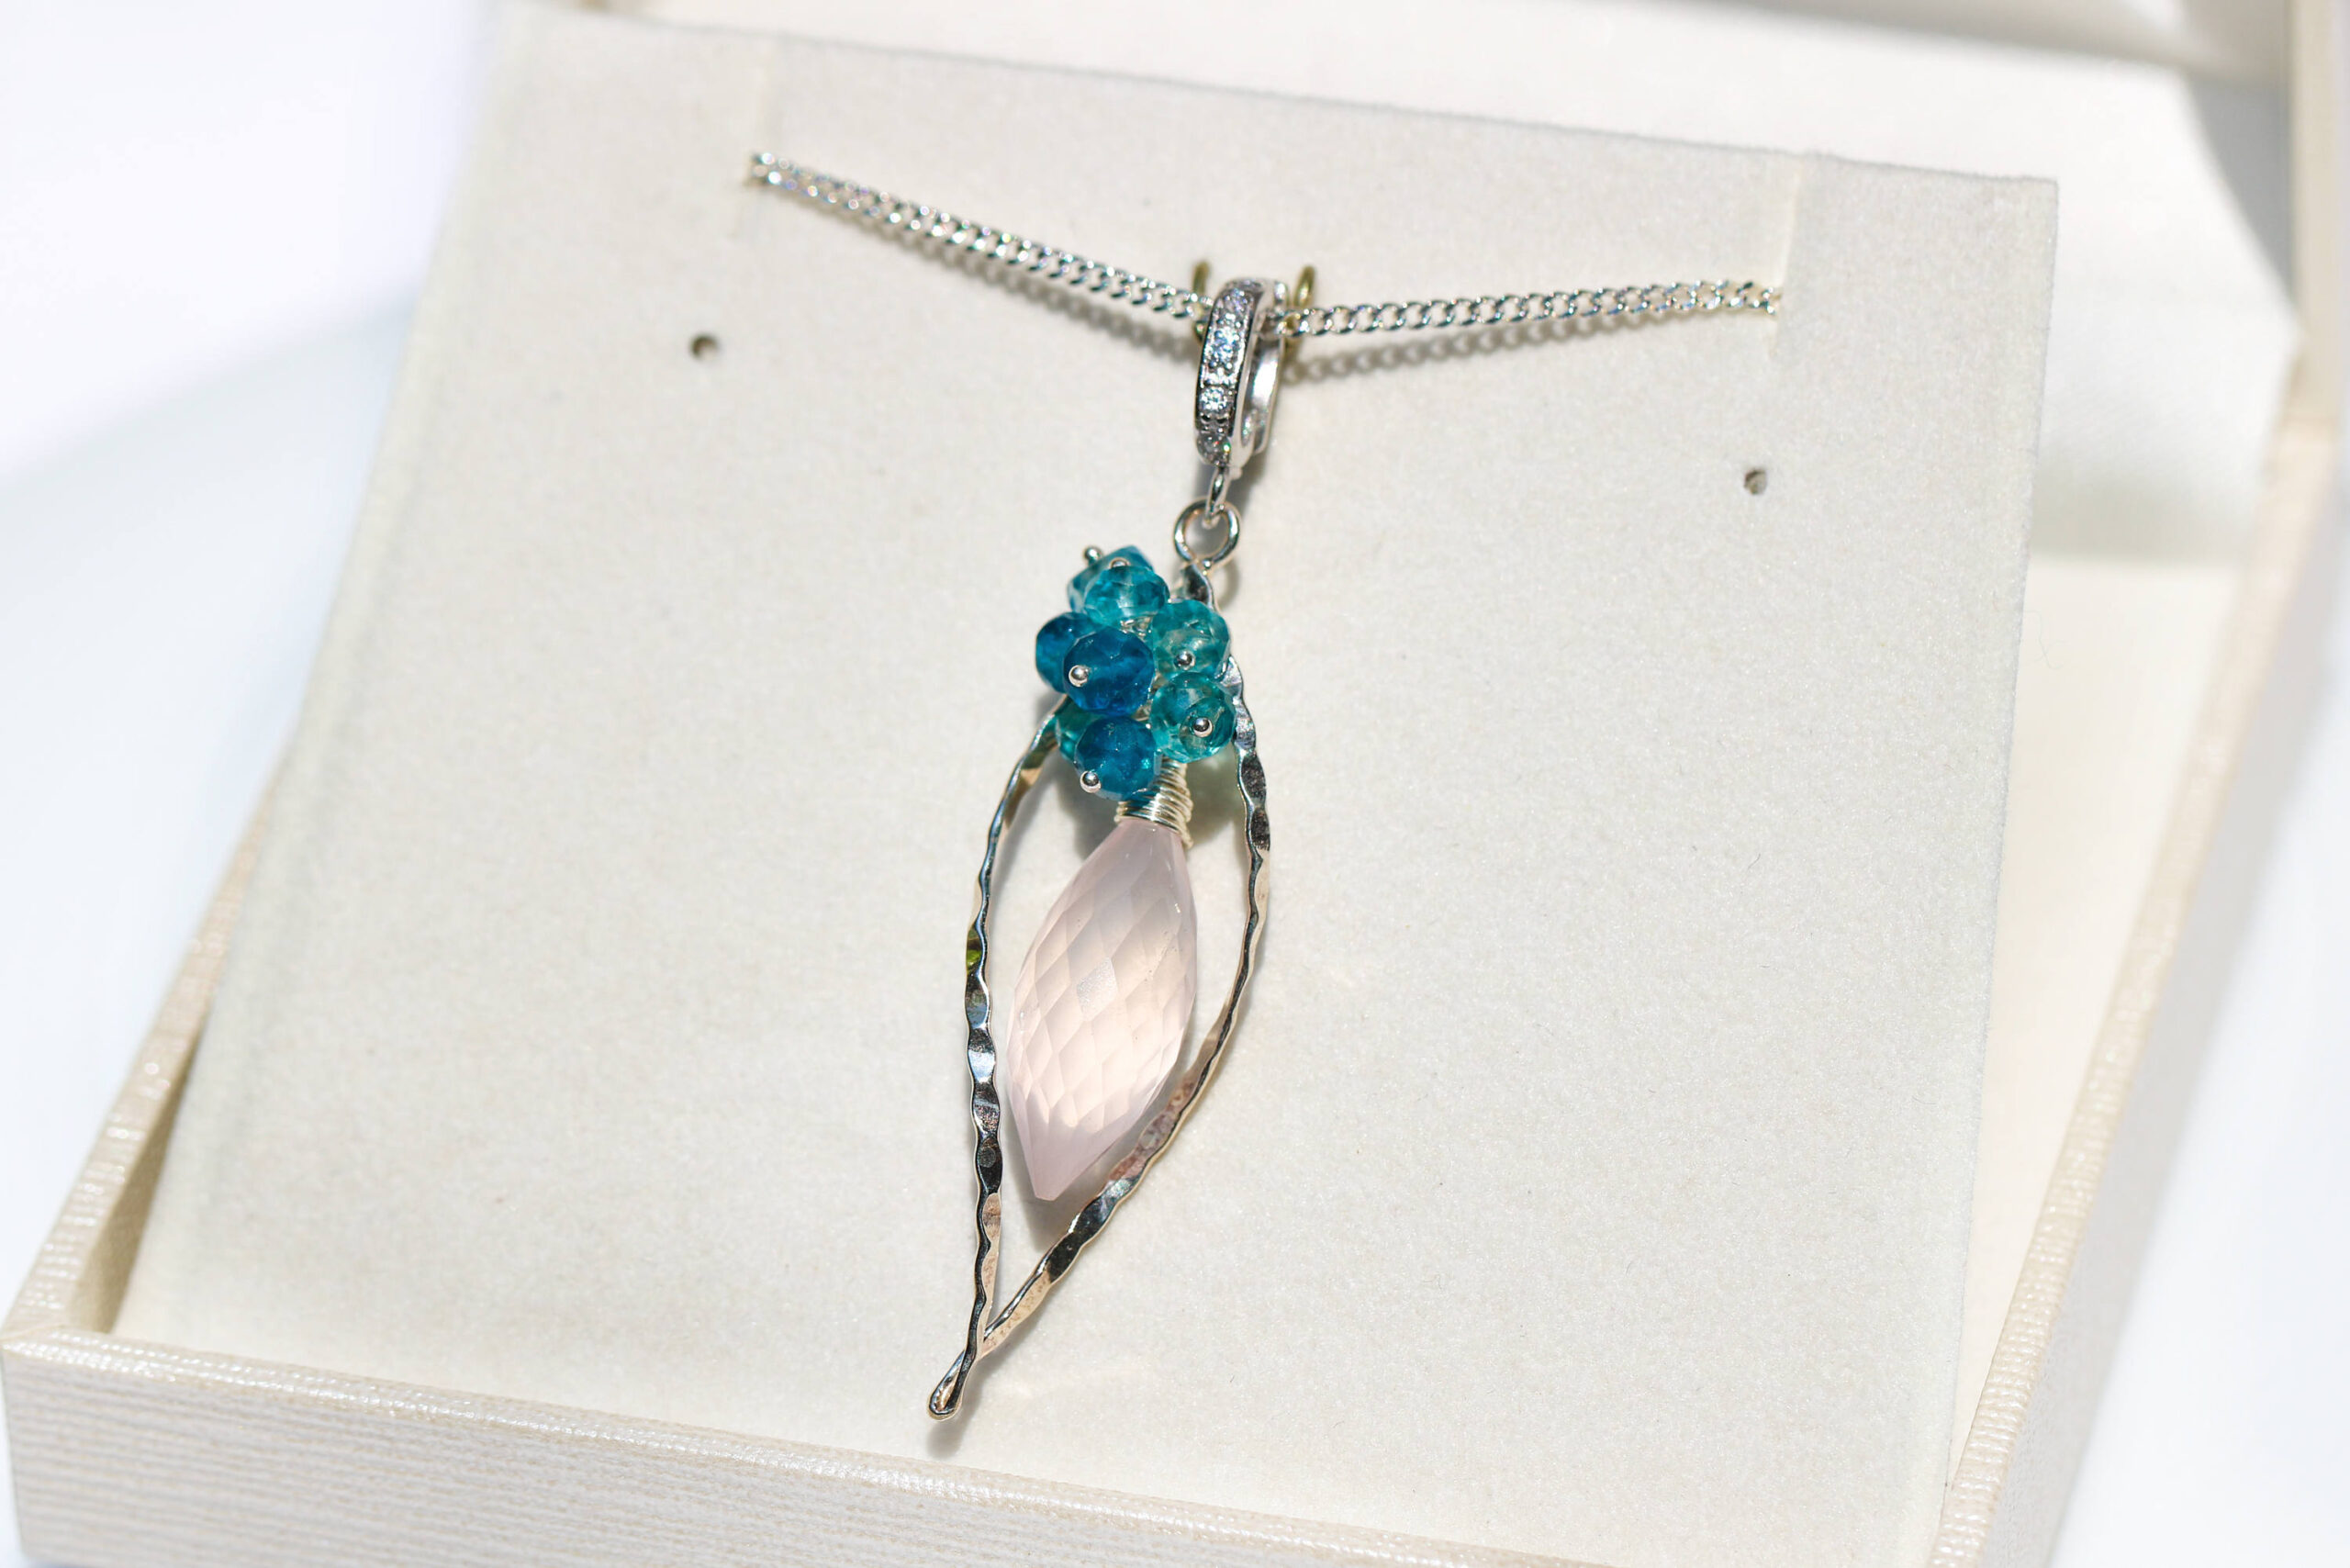 Rose Quartz, Neon Blue Apatite and London Blue Topaz Silver Pendant Necklace